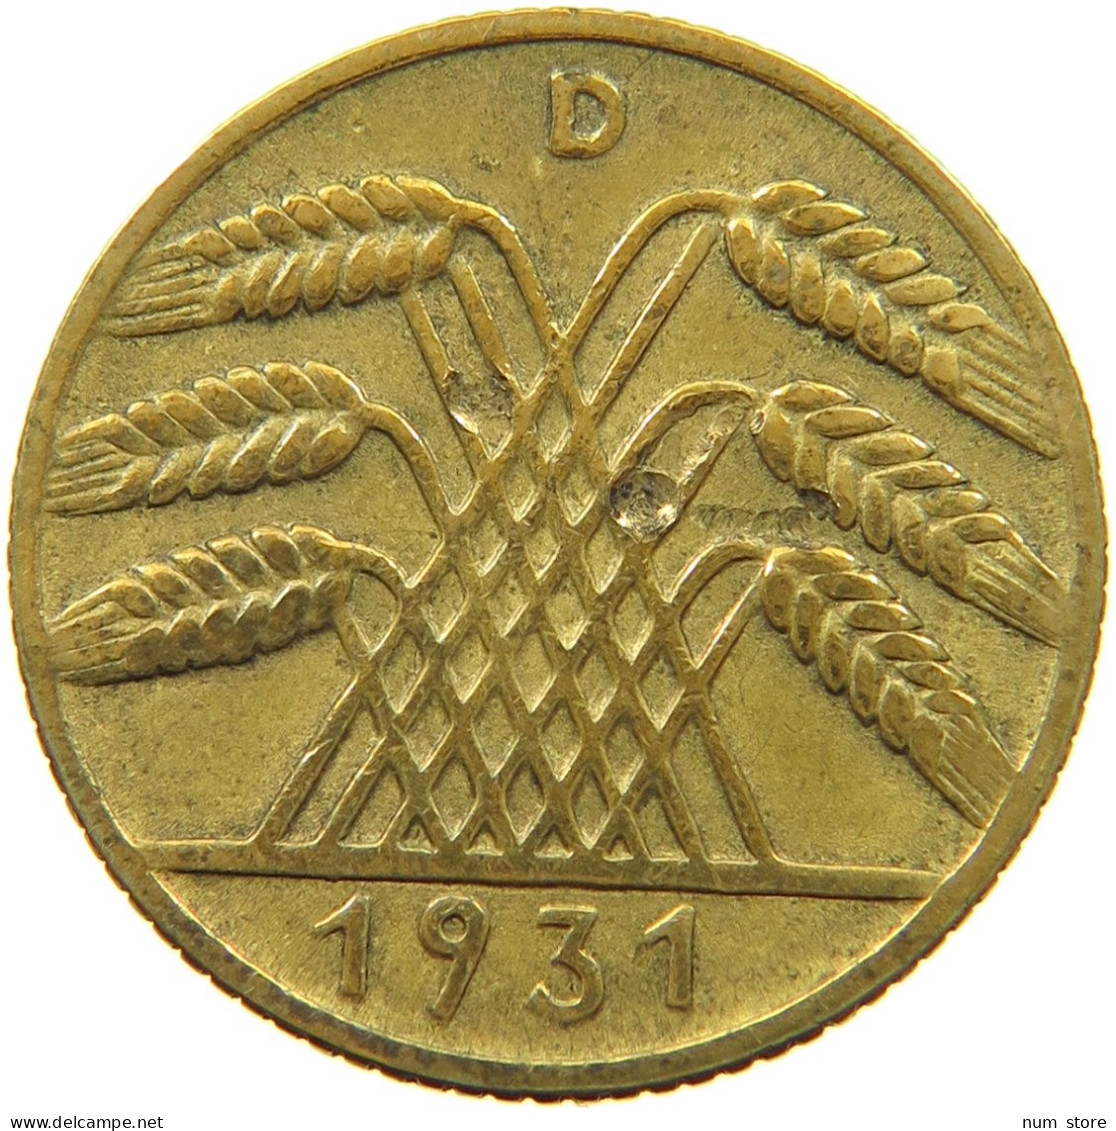 WEIMARER REPUBLIC 10 PFENNIG 1931 D 10 REICHSPFENNIG #MA 003488 - 10 Rentenpfennig & 10 Reichspfennig